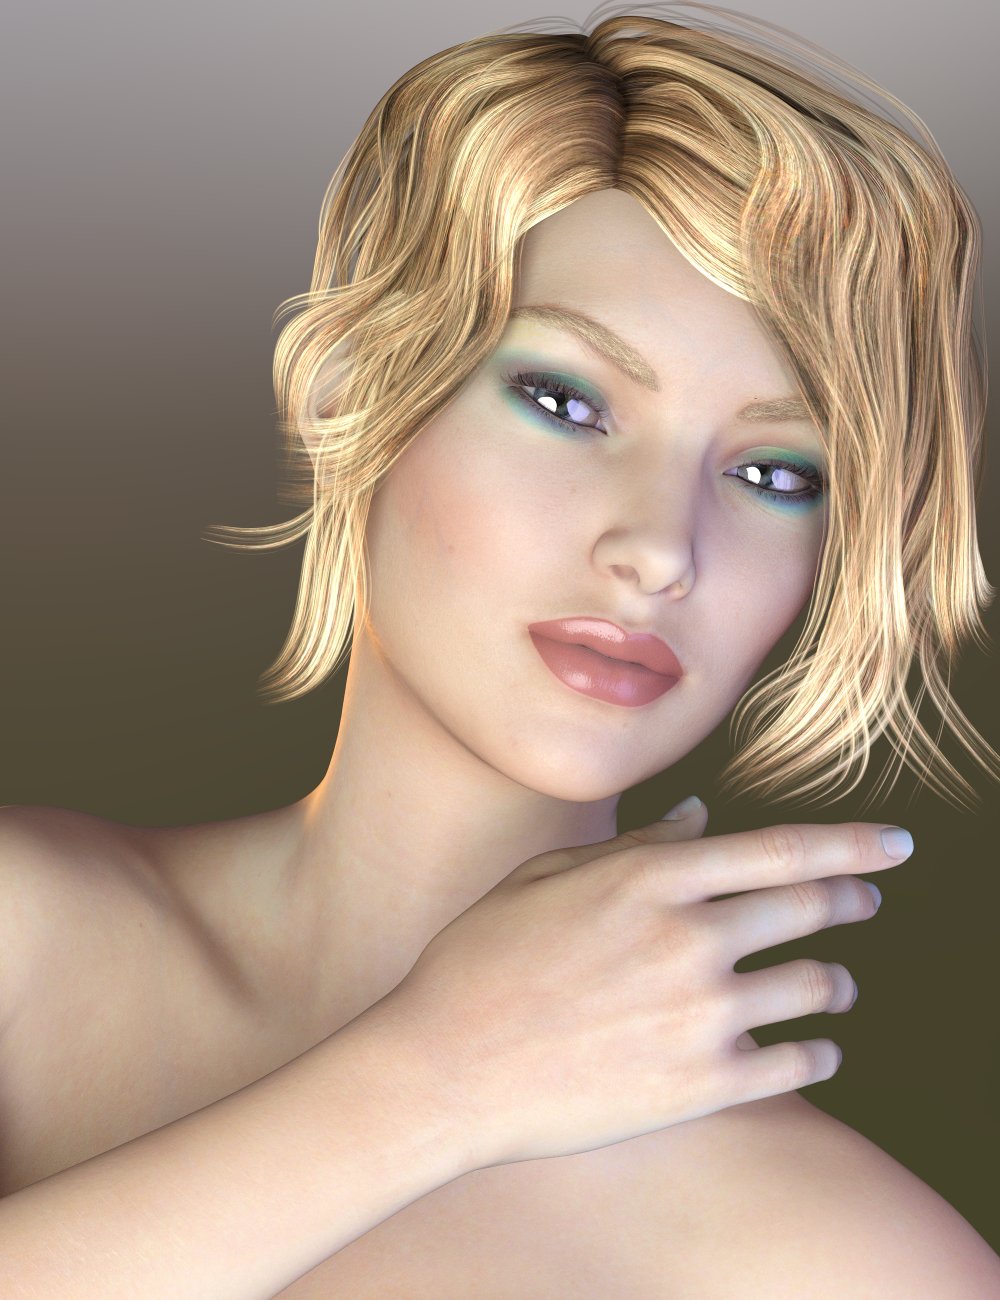 Beautiful Skin Iray Genesis 3 Female(s) by: SickleyieldFuseling, 3D Models by Daz 3D